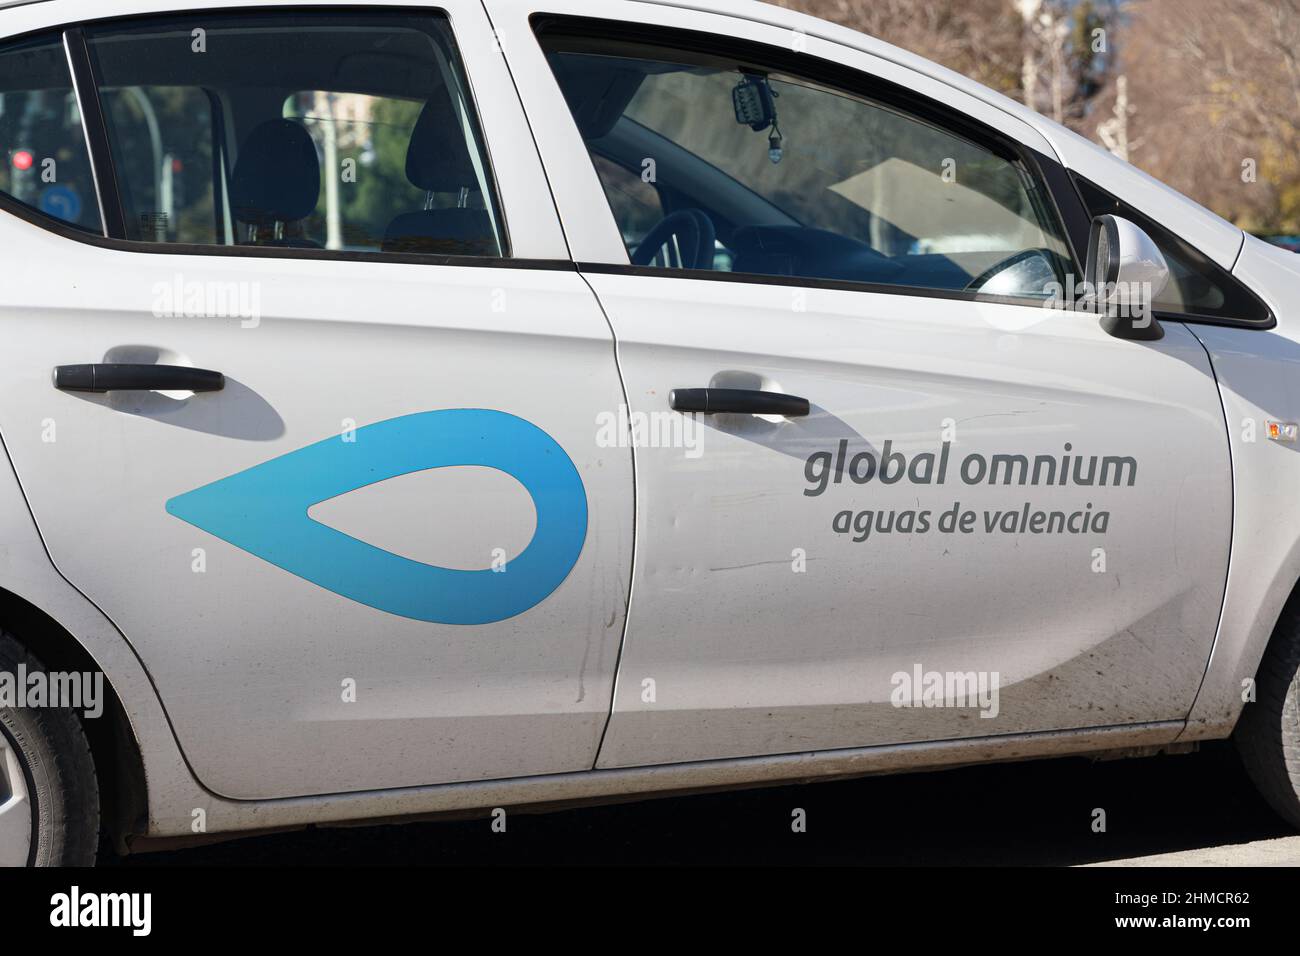 VALENCE, ESPAGNE - 02 FÉVRIER 2022 : Global Omnium est une entreprise spécialisée dans le cycle intégré de l'eau Banque D'Images